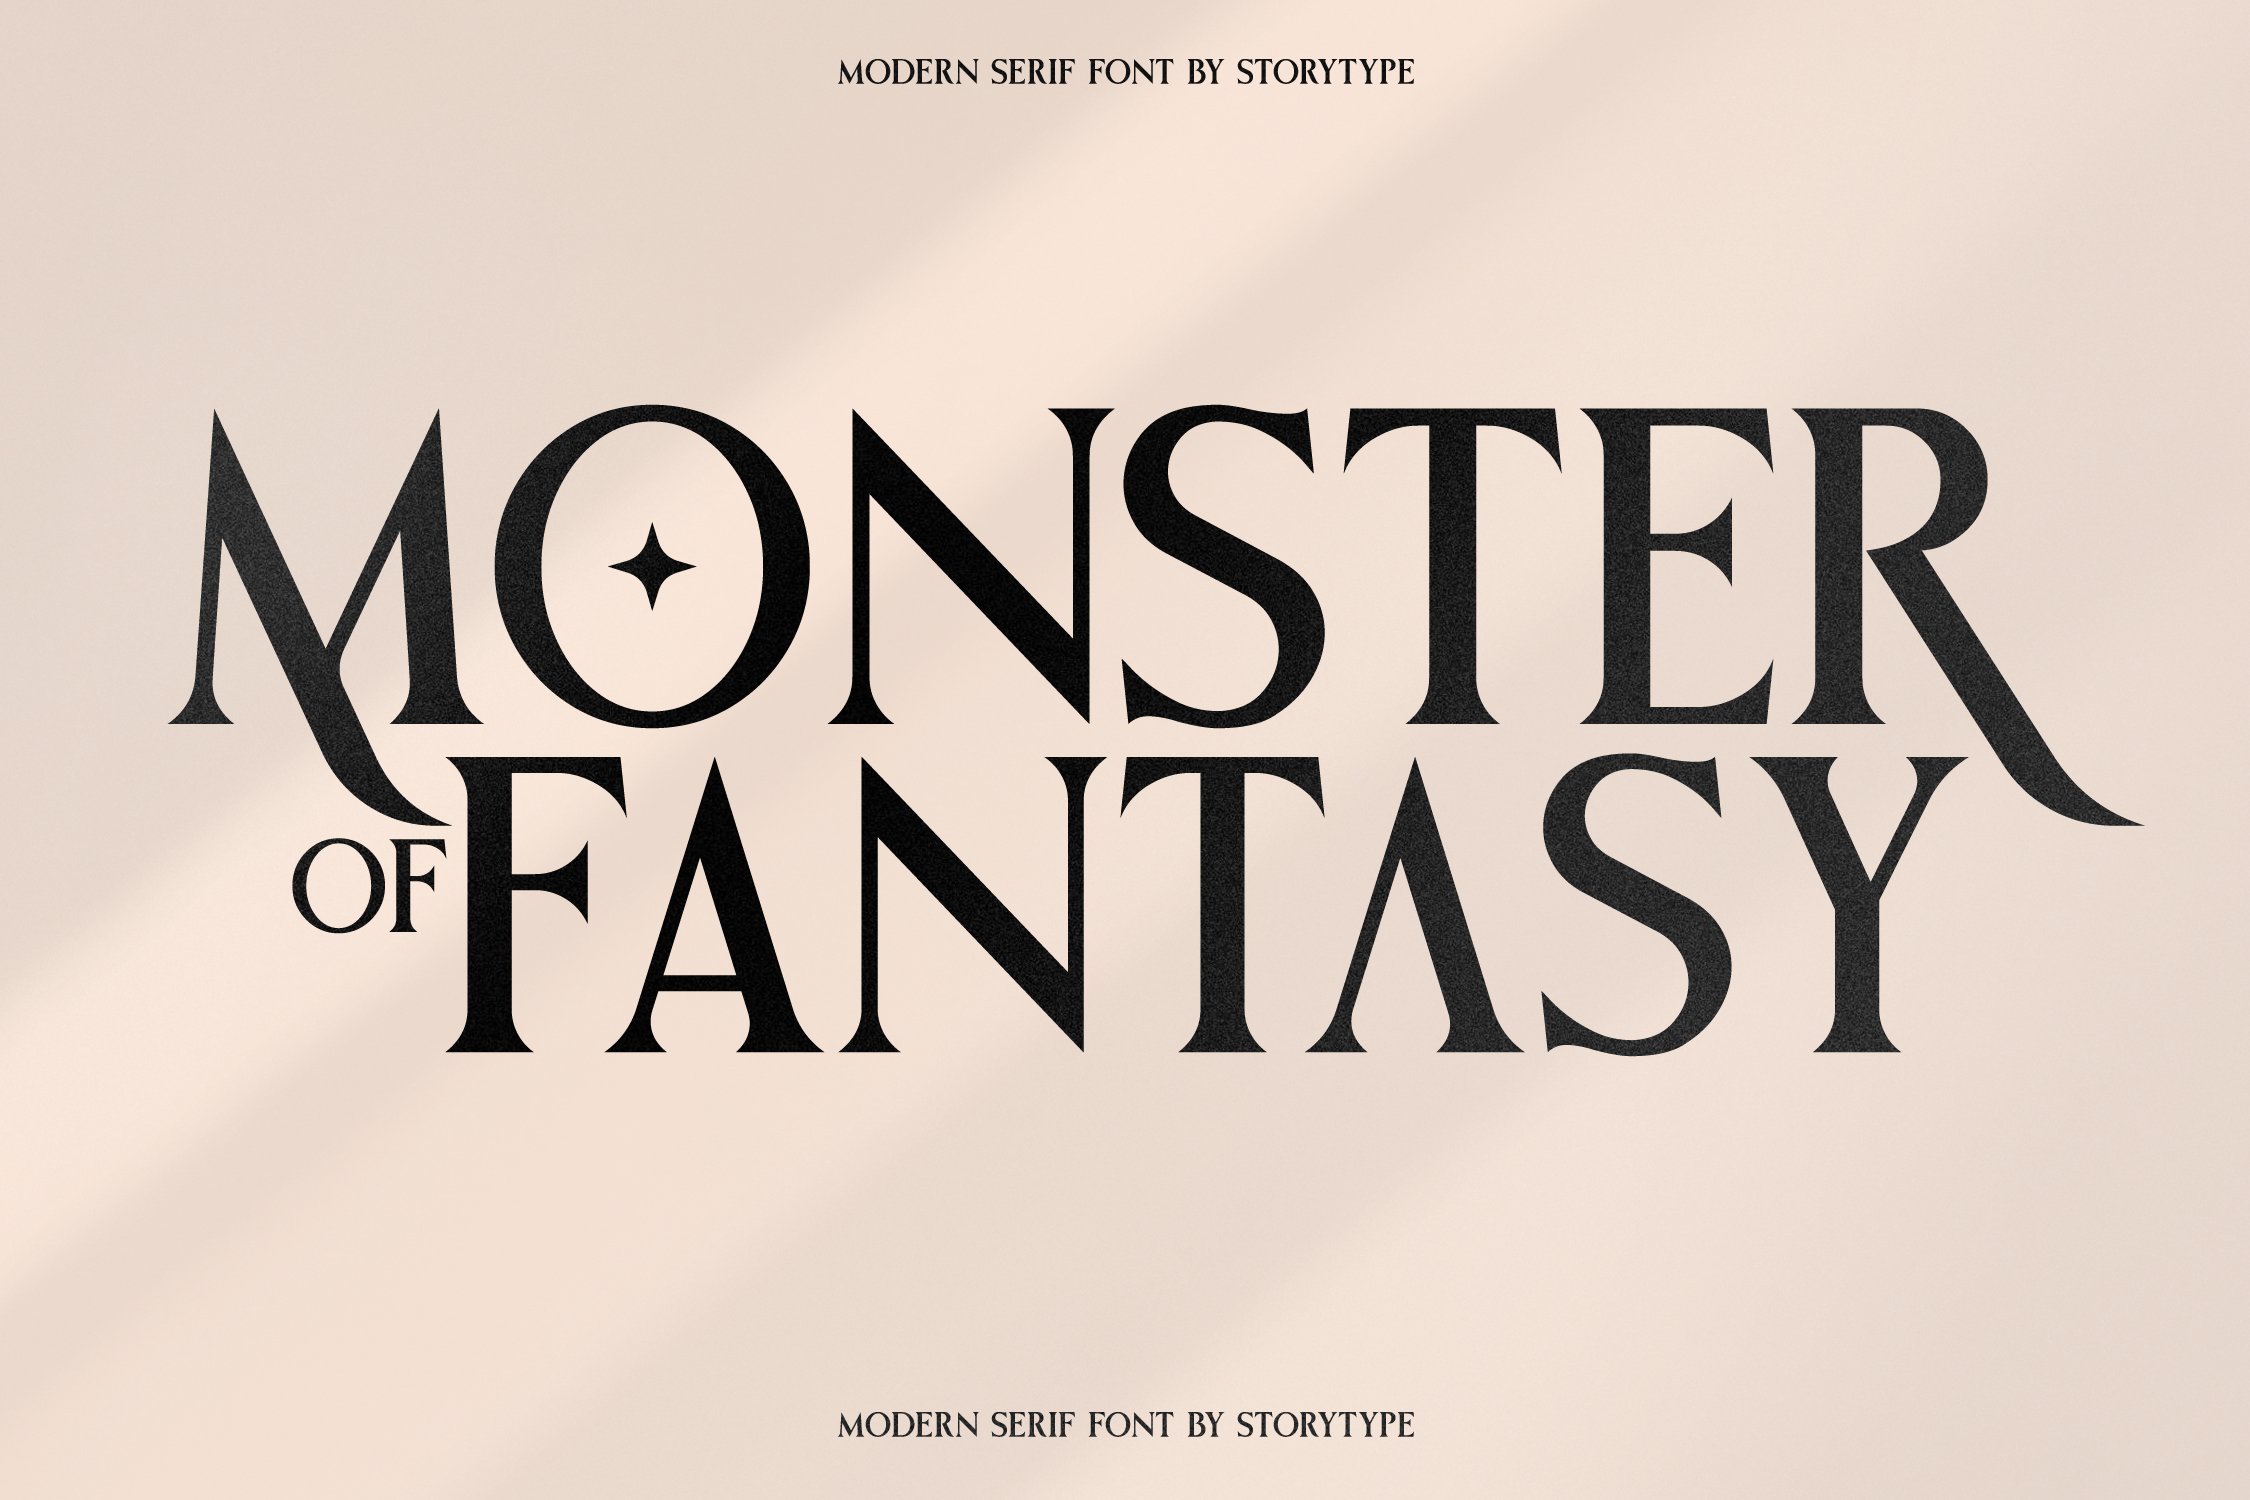 Monster Of Fantasy Modern Serif Font cover image.